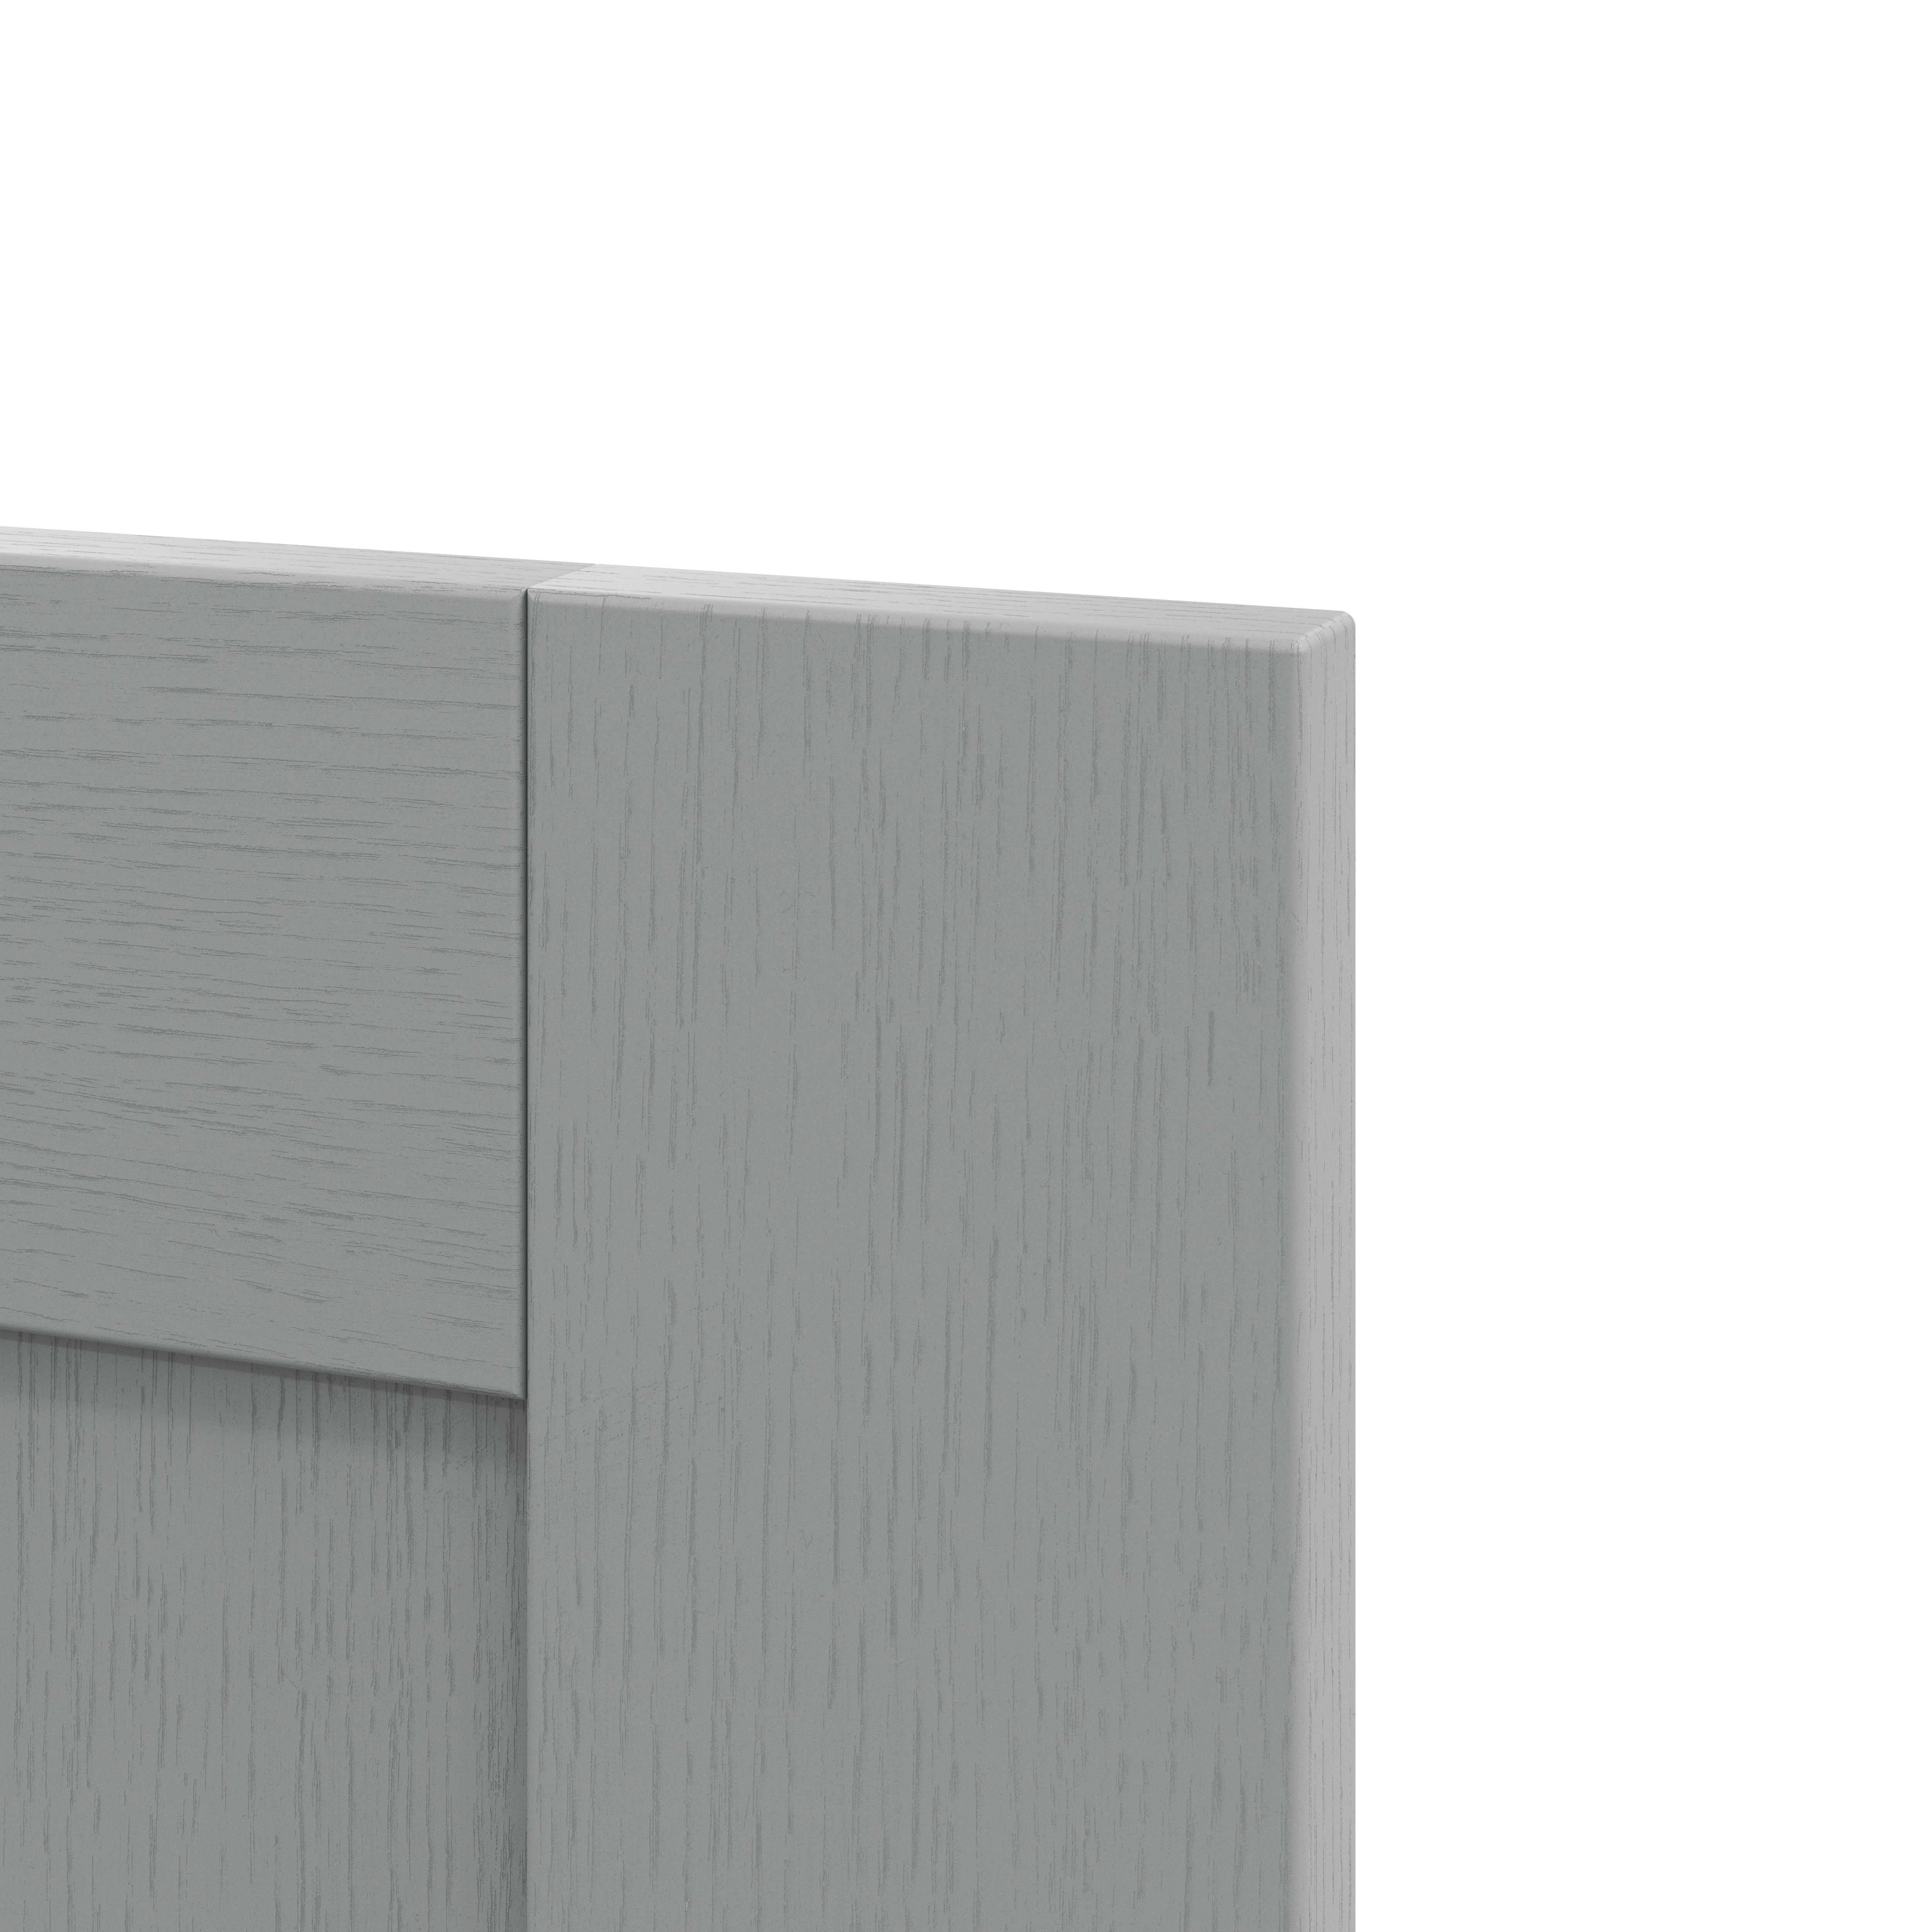 GoodHome Alpinia Matt slate grey wood effect Drawer front, bridging door & bi fold door, (W)600mm (H)356mm (T)18mm